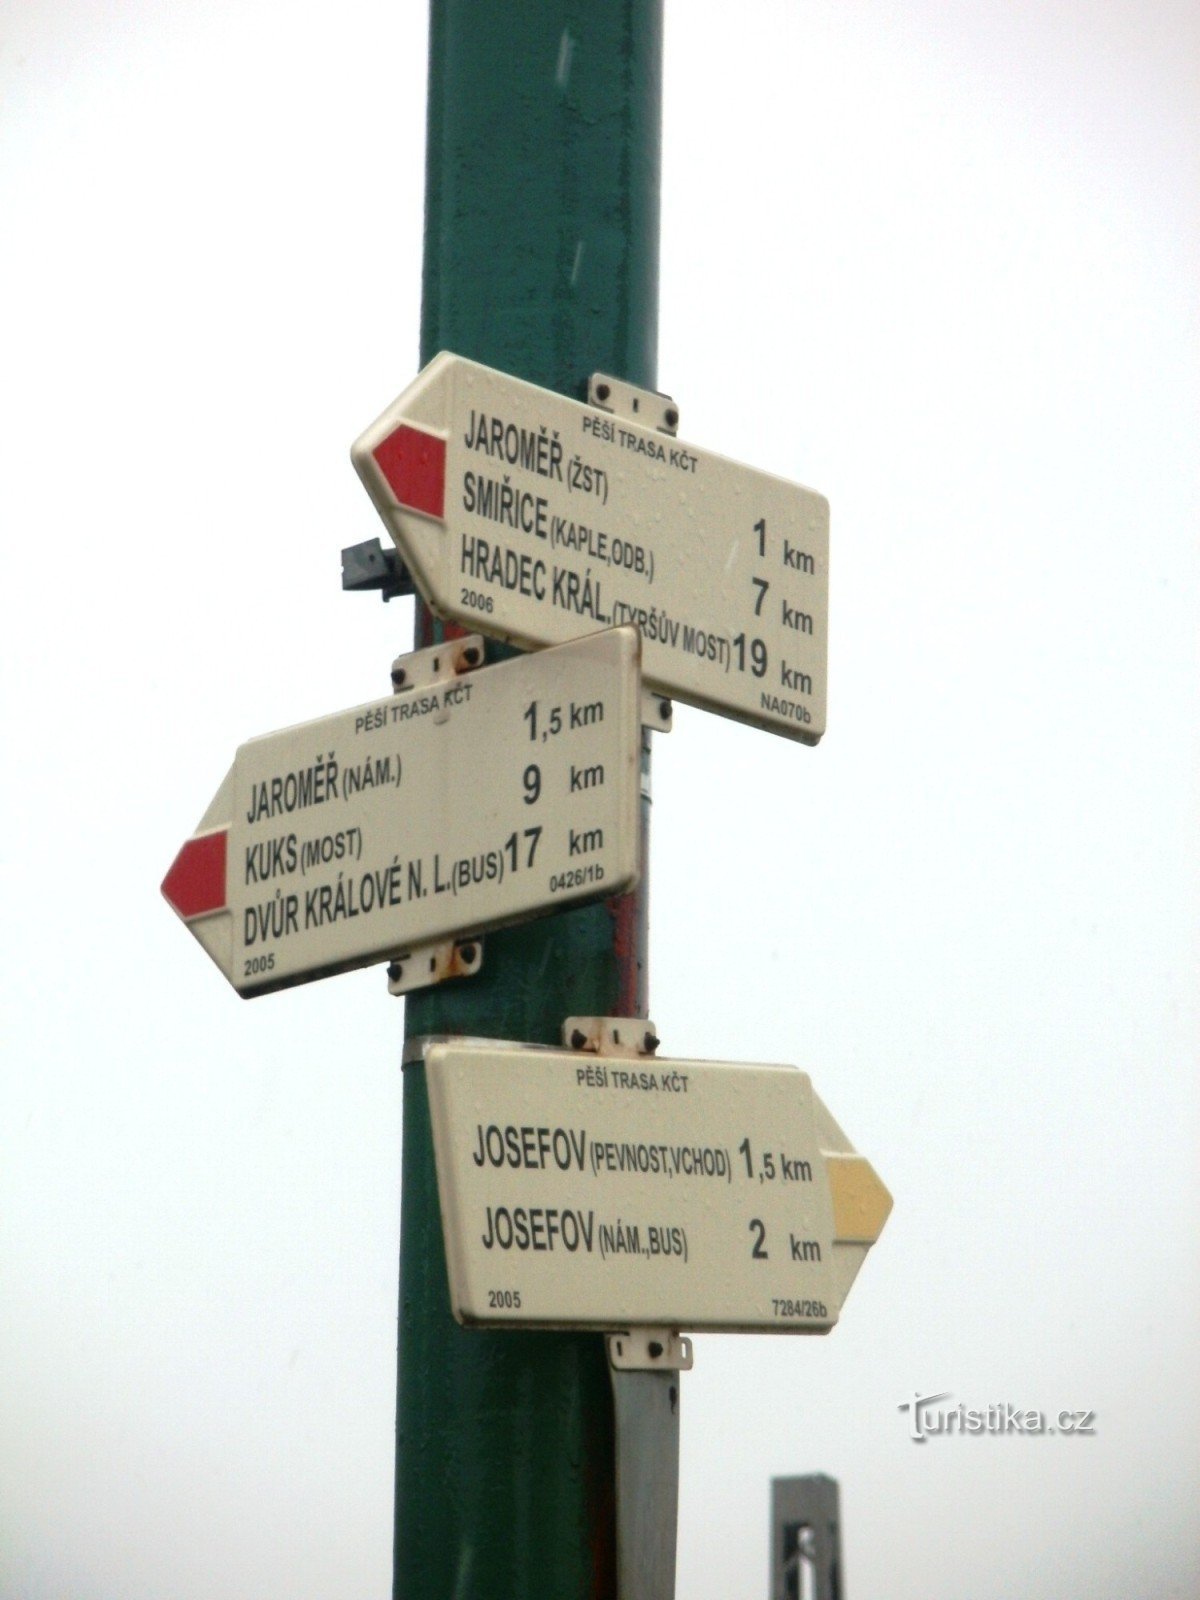 ngã tư du lịch Jaroměř - tại giao lộ đường sắt